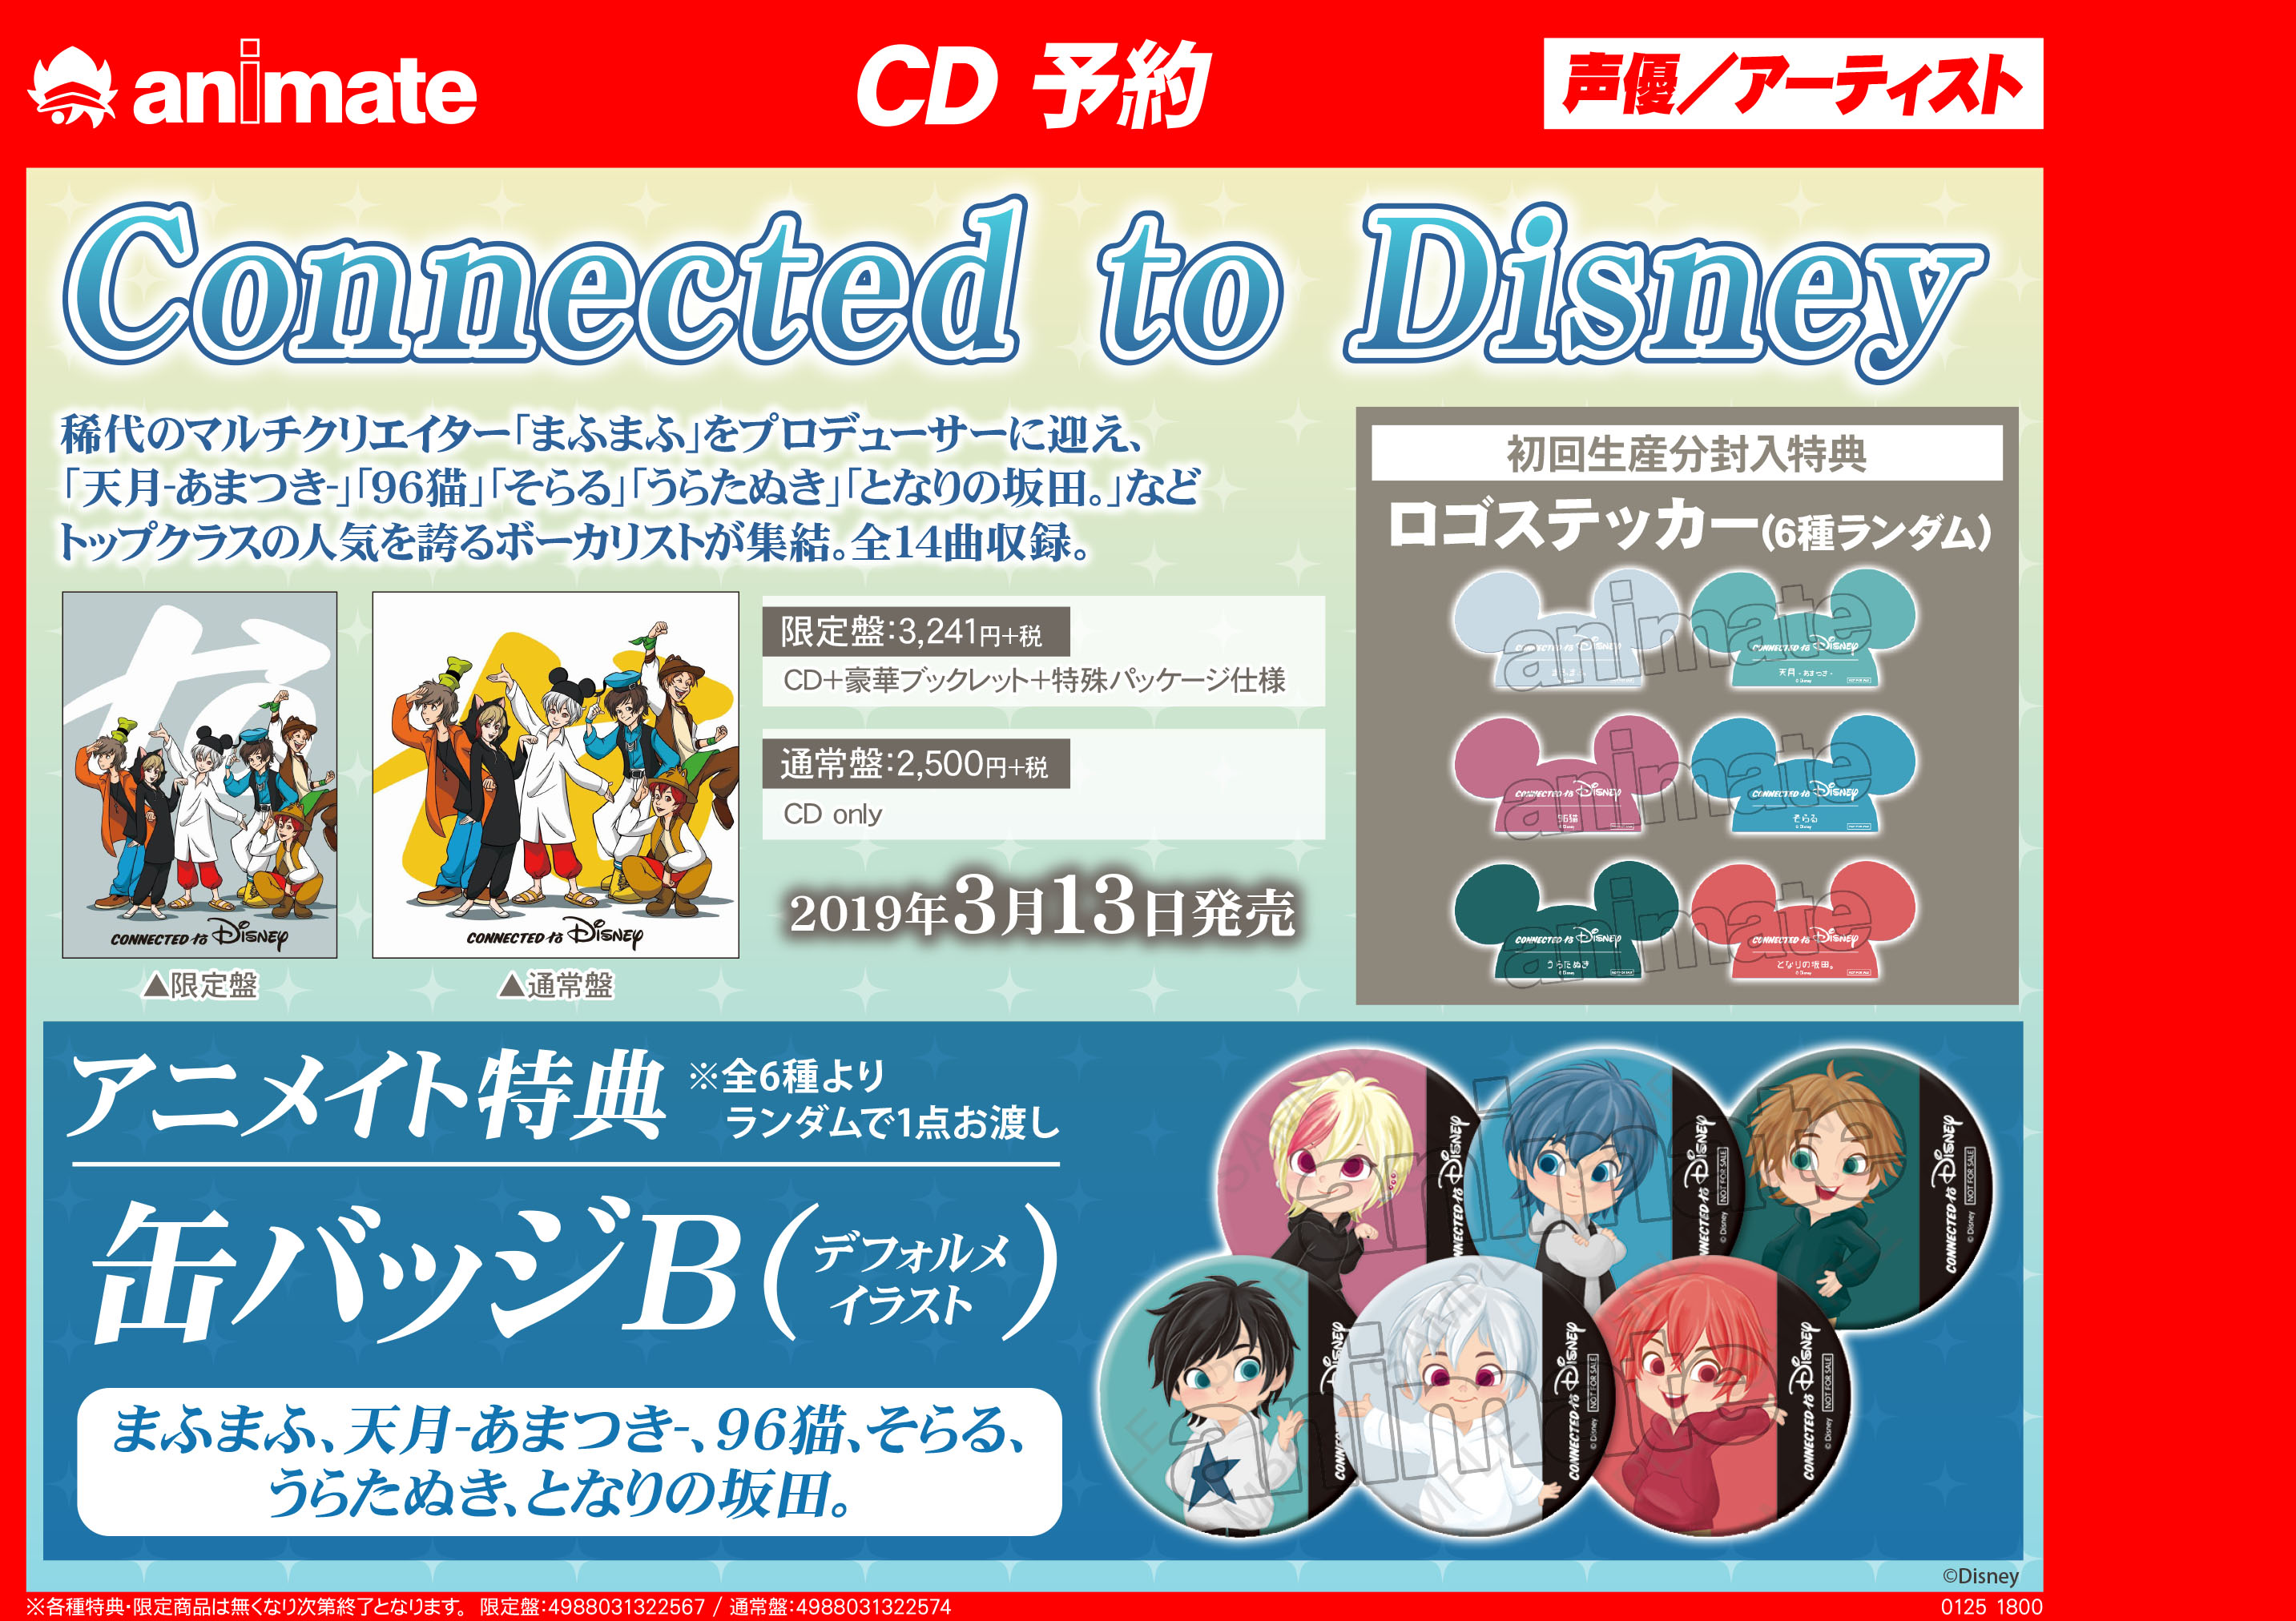 Cd予約情報 Connected To Disney 豪華 歌い手 によるディズニー公式カバーアルバム アニメイト吉祥寺パルコ